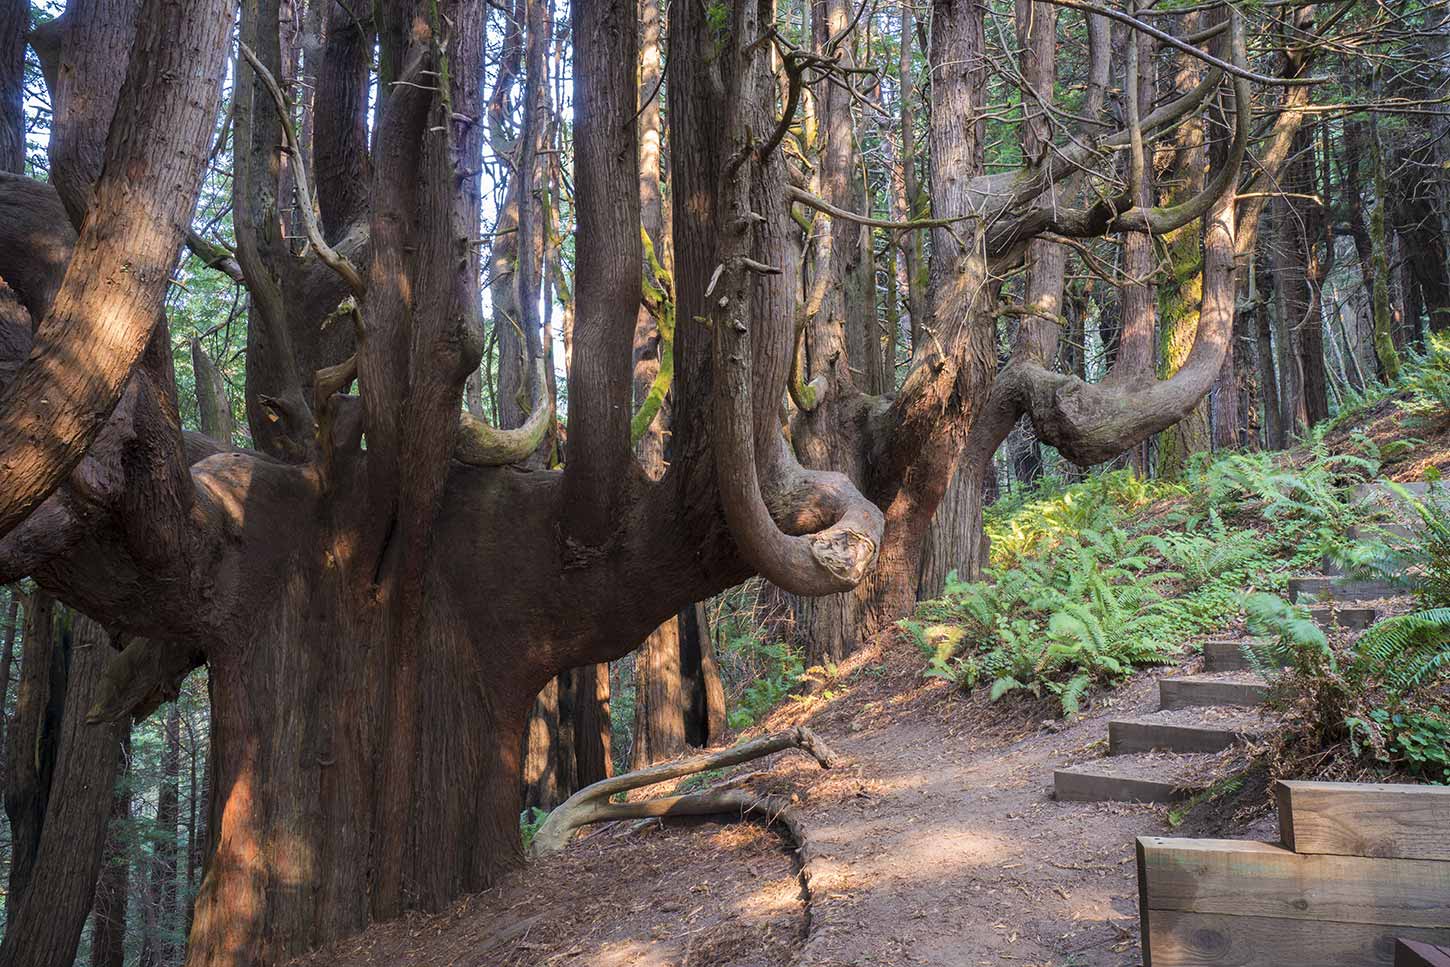 A Unique Tree on California’s North Coast